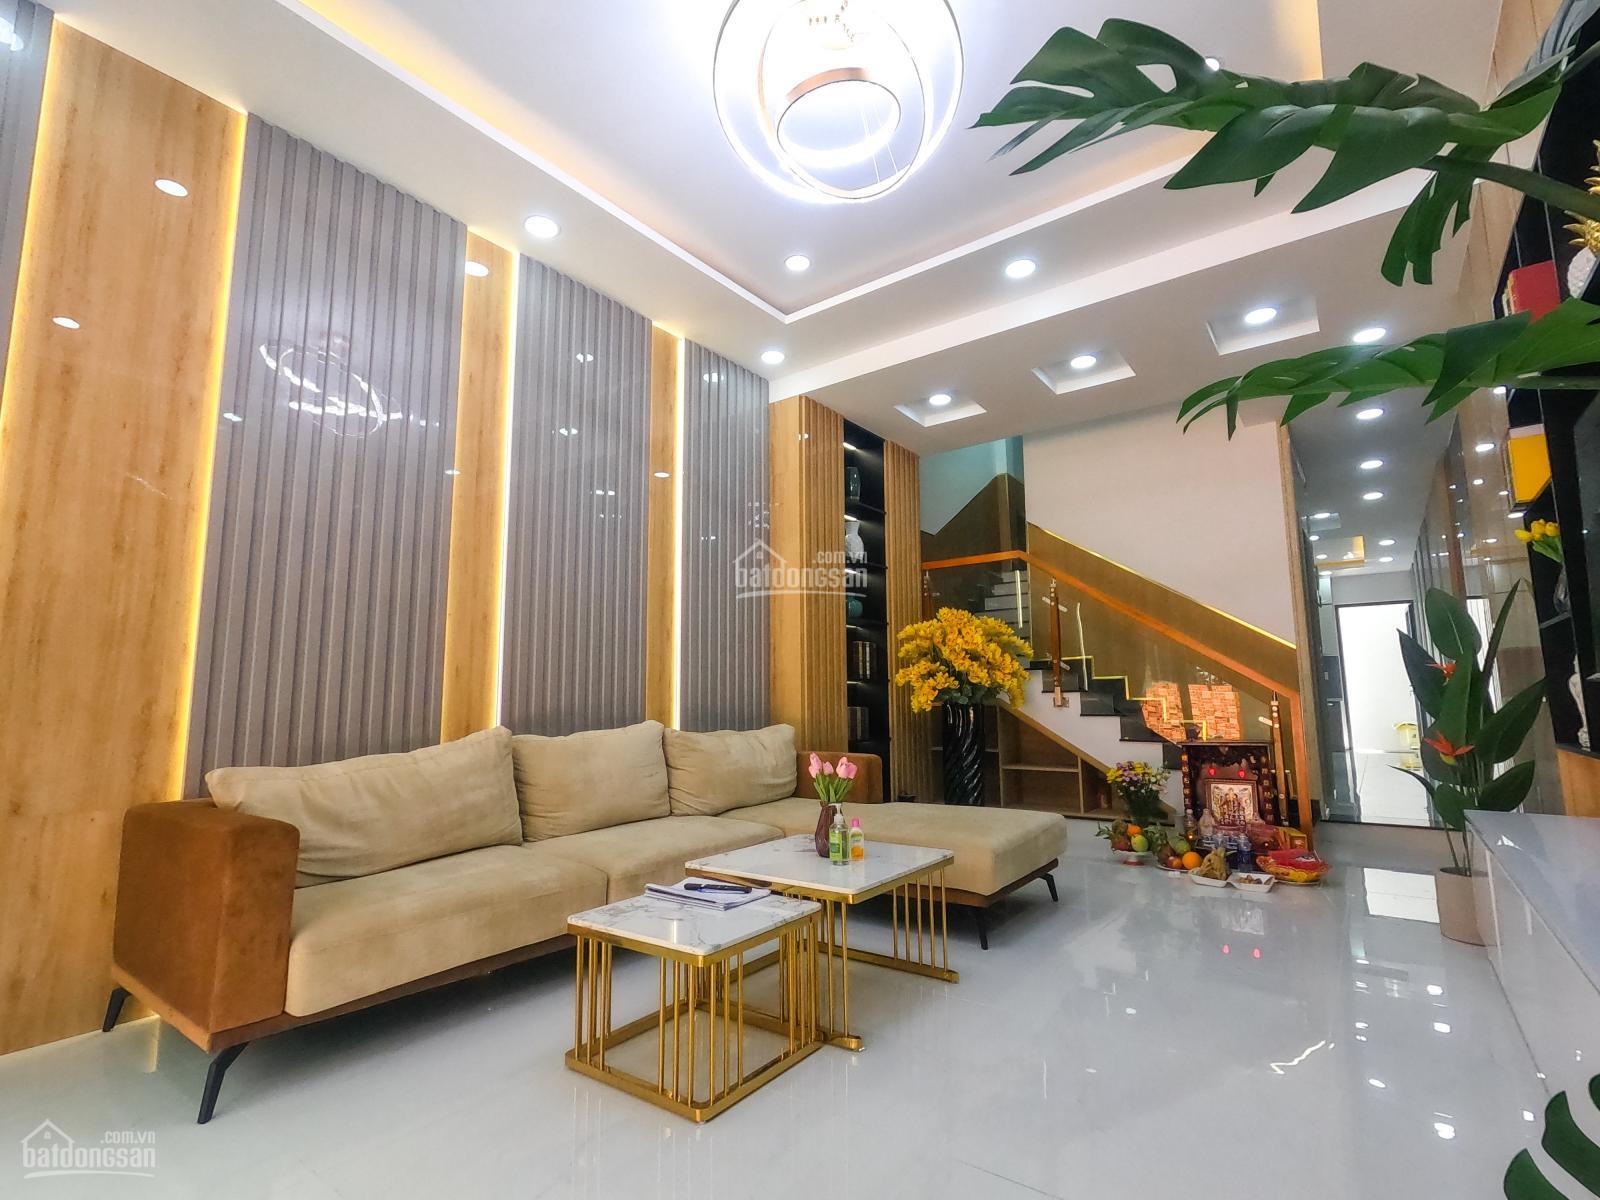 Chính chủ bán gấp nhà 1 trệt 4 lầu ngay Nguyễn Sơn - Tân Phú. KDC kinh doanh buôn bán